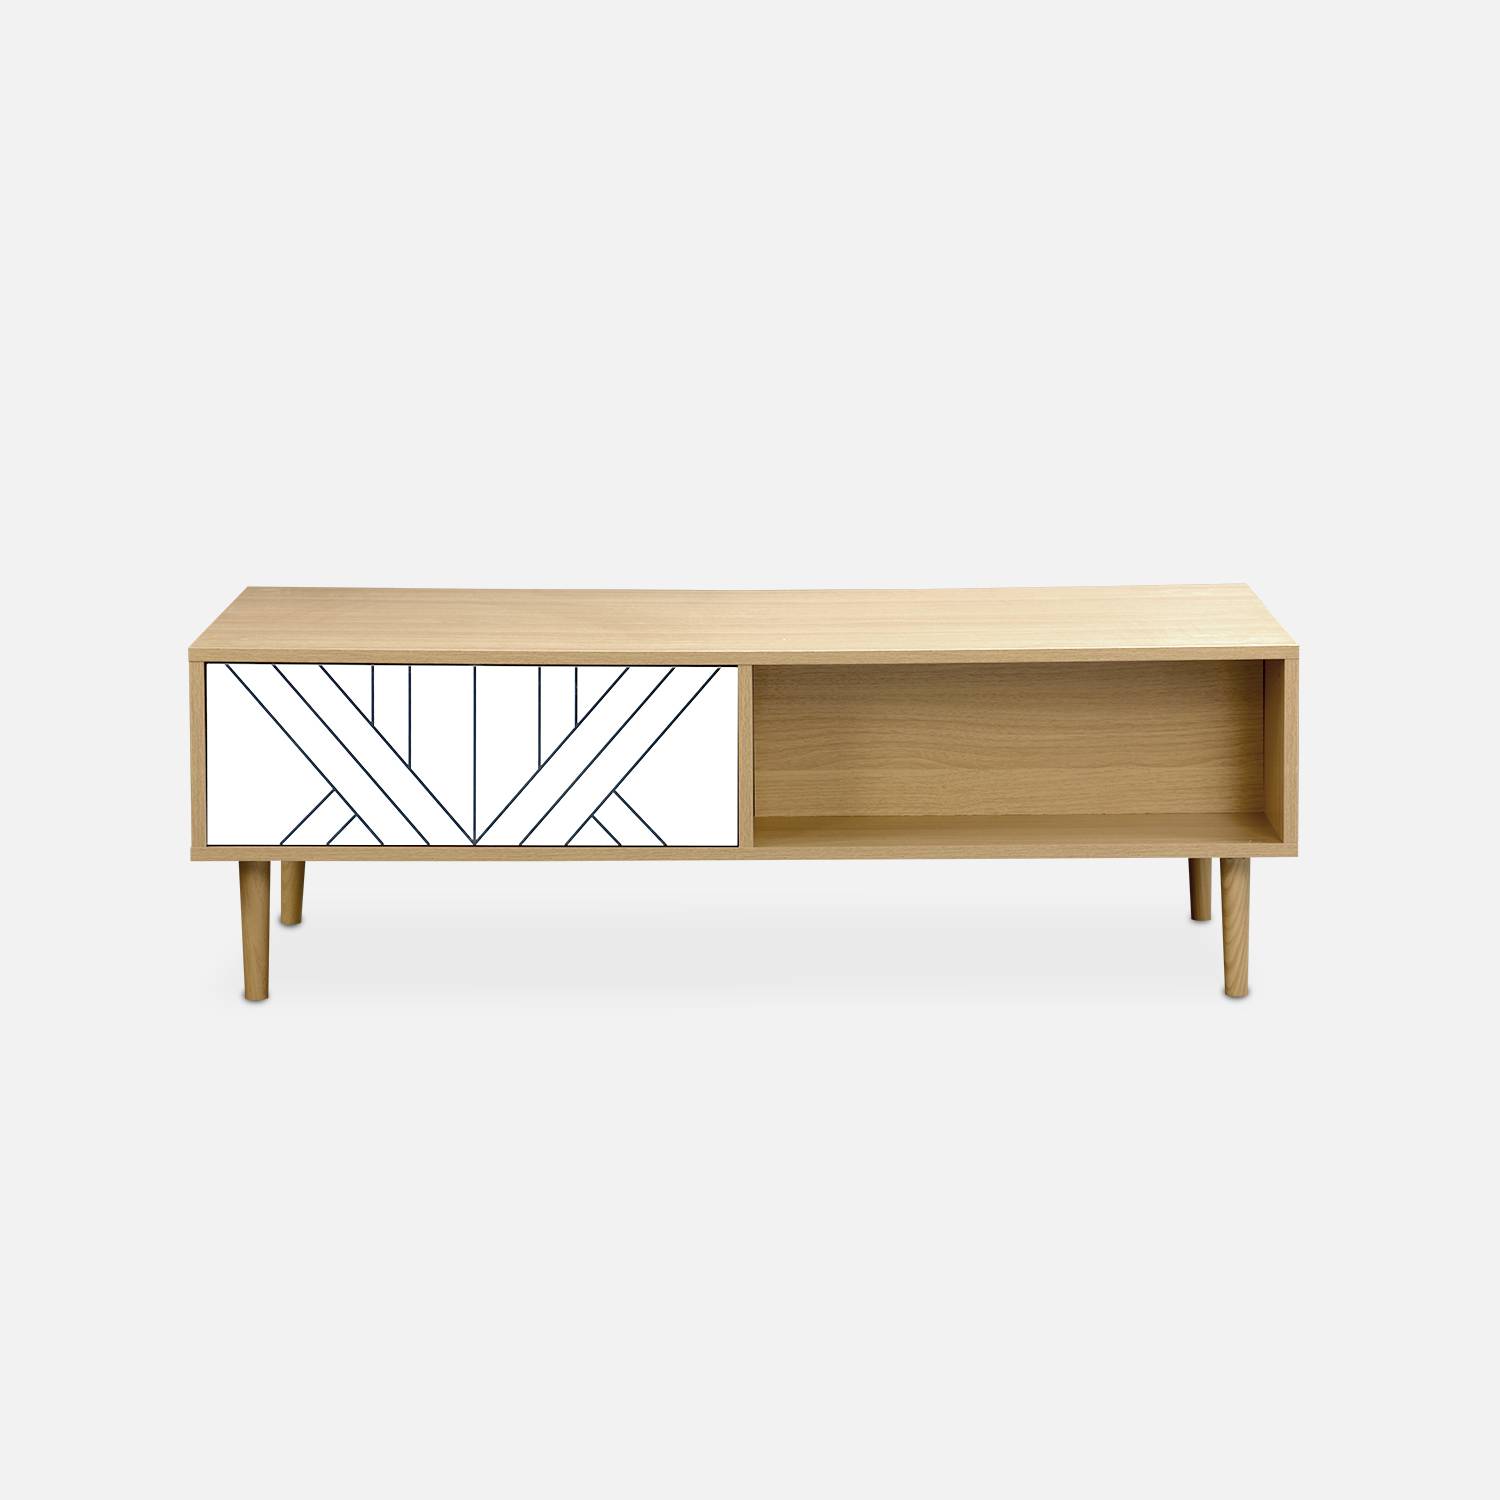 Mesa de centro en madera y blanco - Mika - 2 cajones, 2 espacios de almacenamiento, L 120 x W 55 x H 40cm Photo5